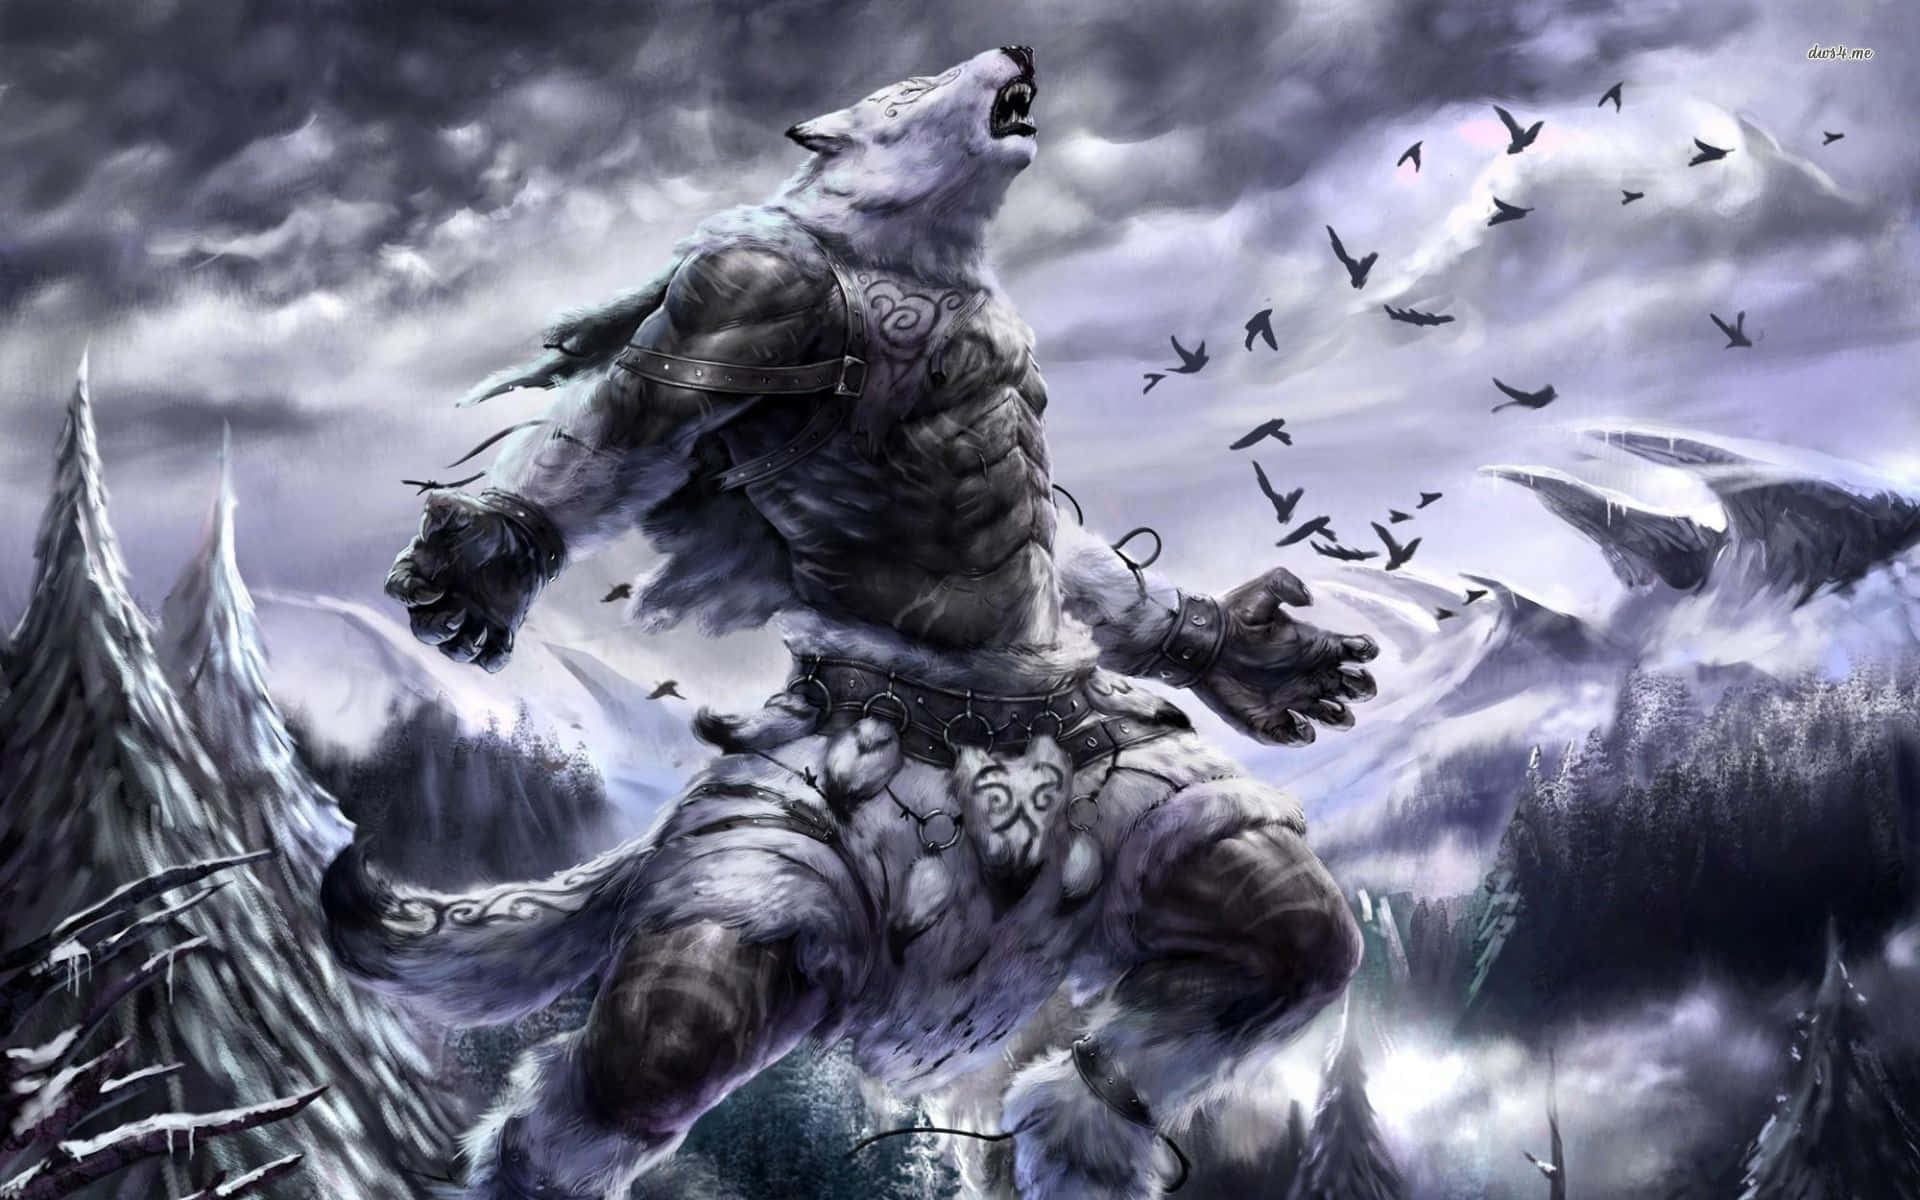 "A Stunning Snapshot of an Alpha Werewolf"